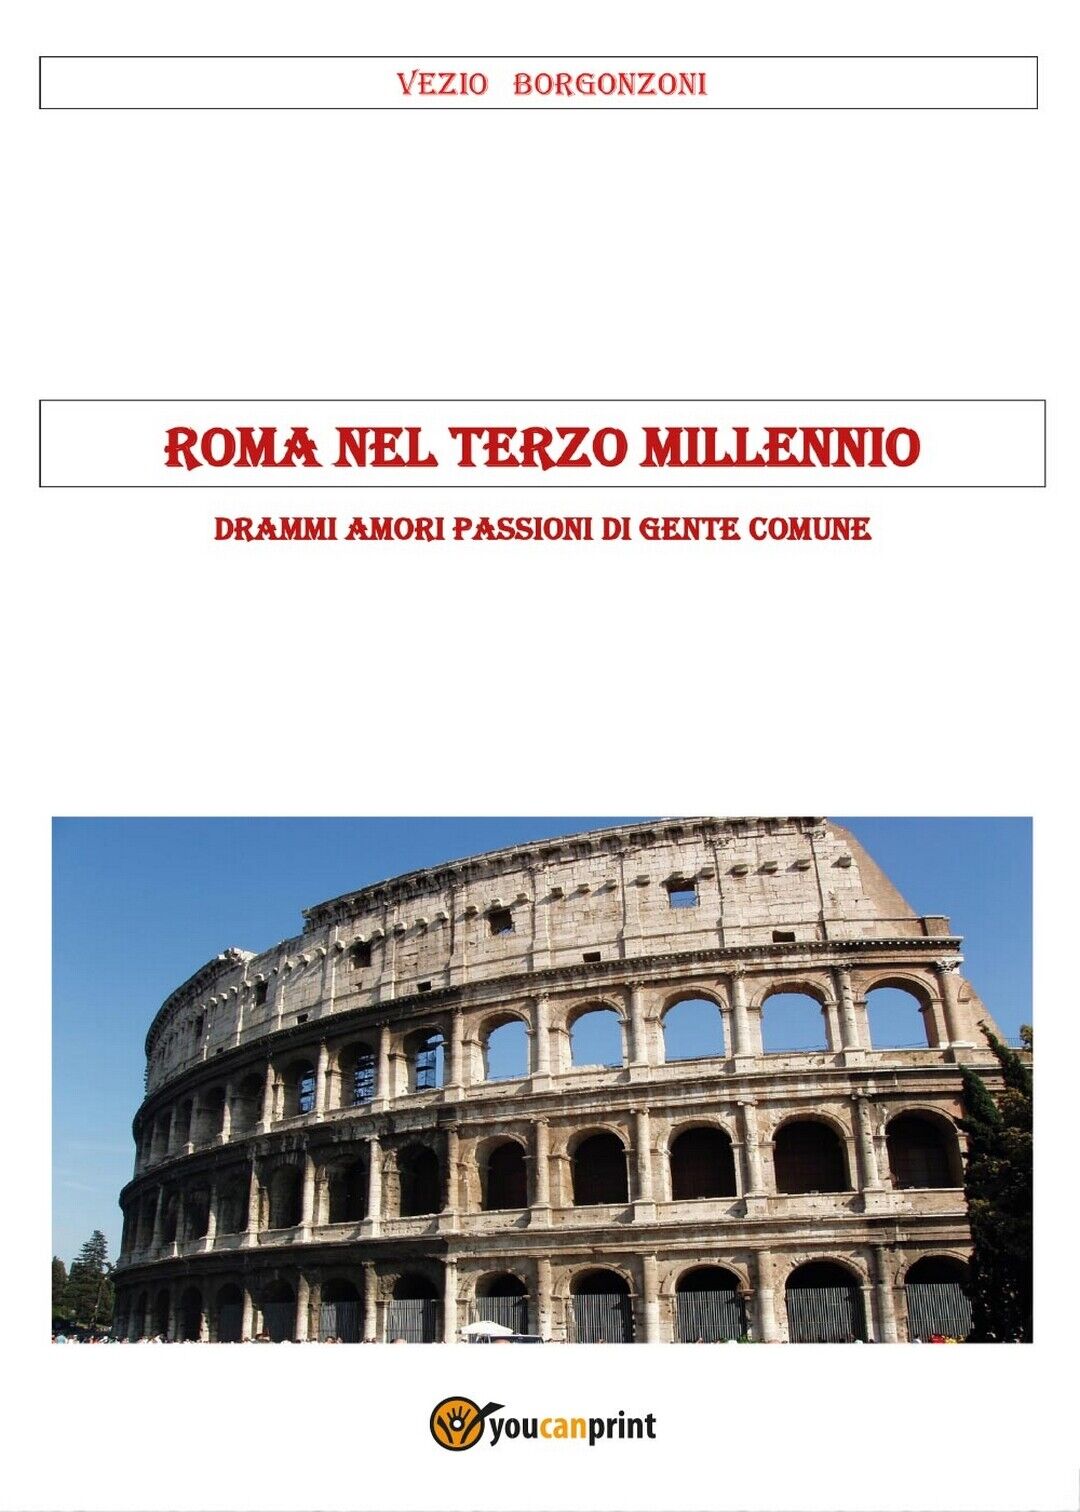 Roma nel terzo millennio  di Vezio Borgonzoni,  2017,  Youcanprint